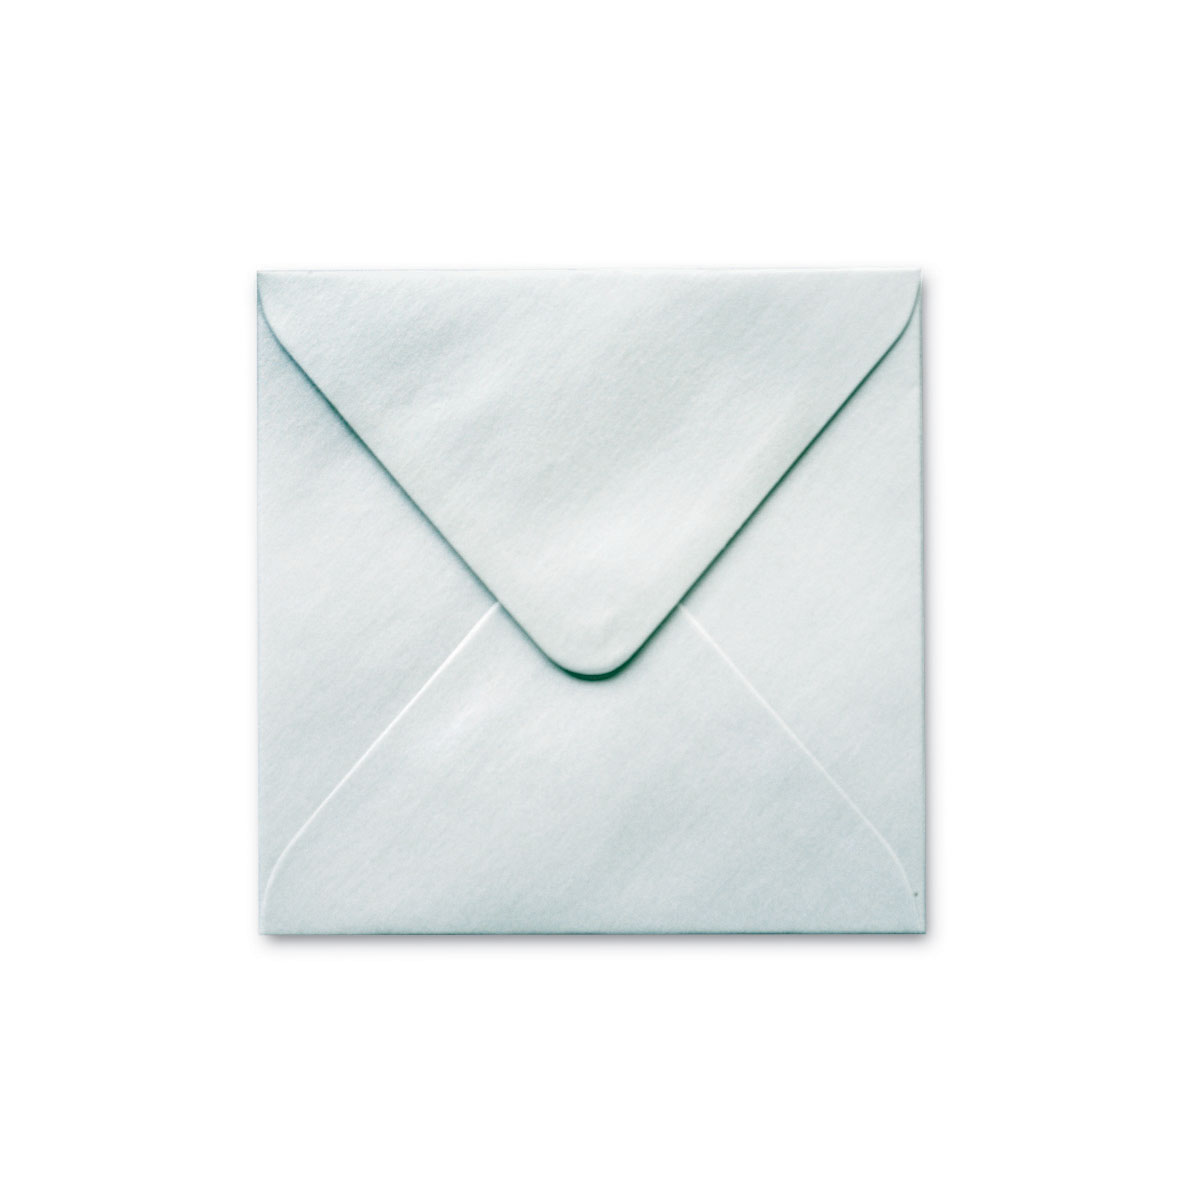 150mm Square Silver Shimmer Envelope